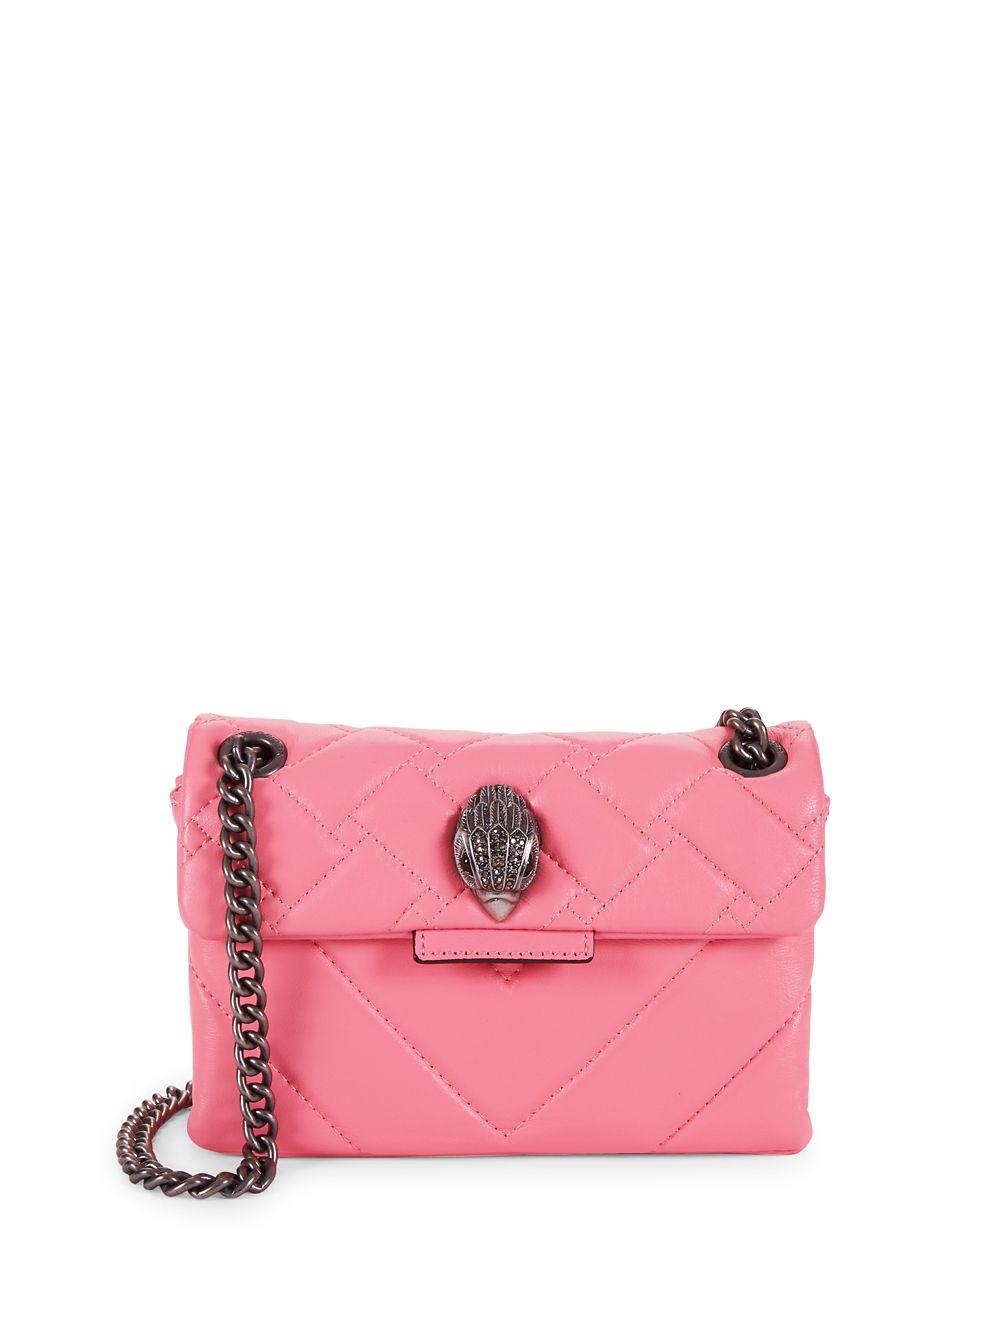 Kurt Geiger Mini Kensington Quilted Leather Shoulder Bag in Pink - Lyst